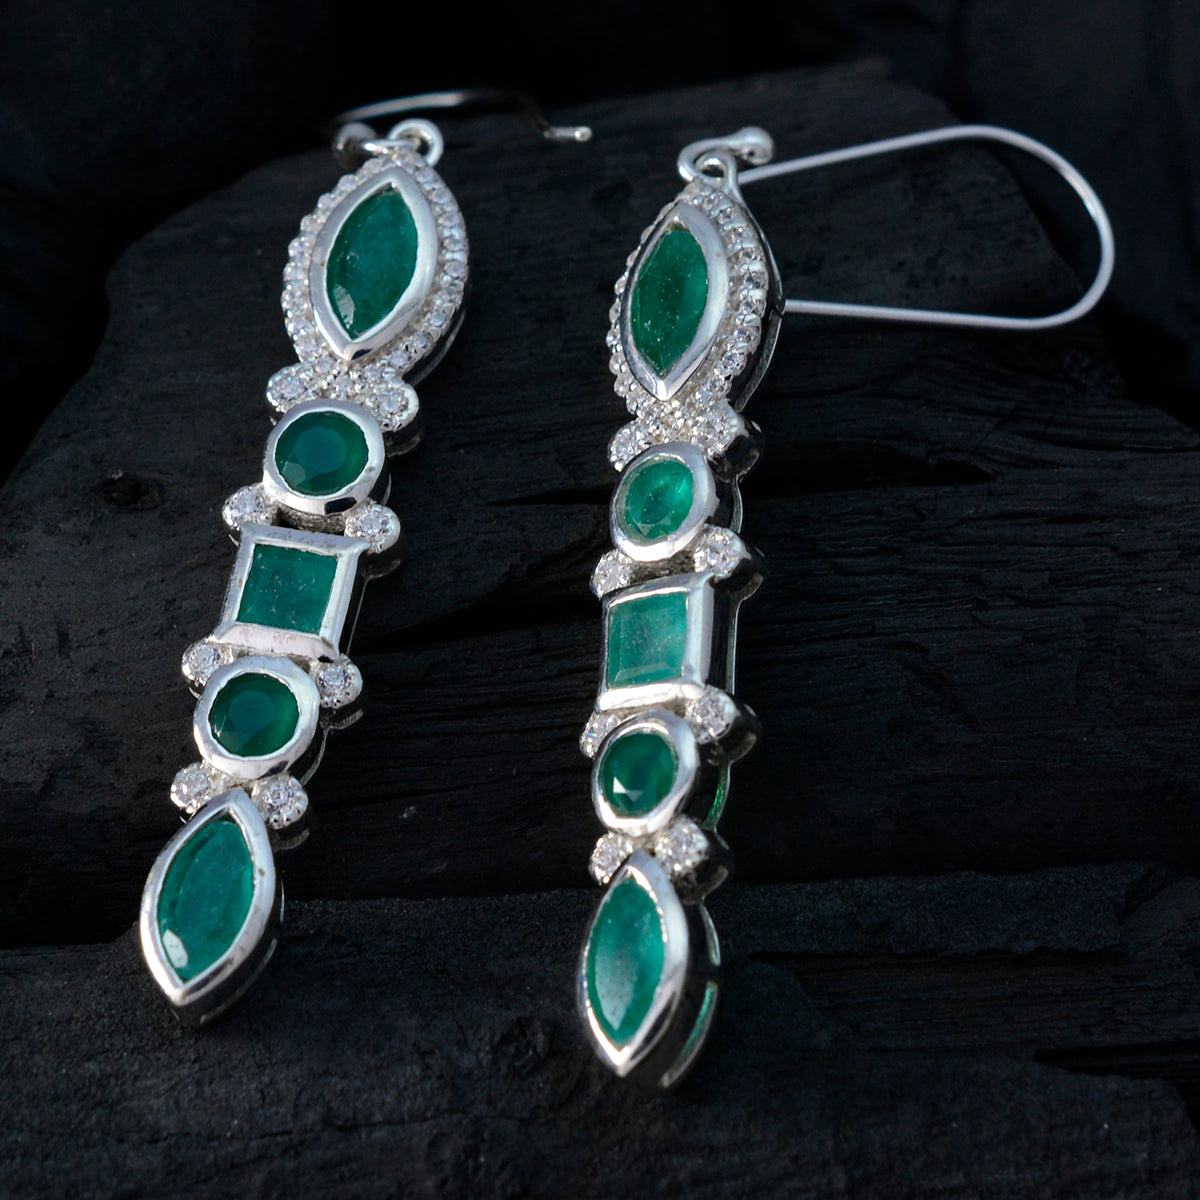 riyo förtrollande sterling silver örhänge för femme indiska smaragd örhänge bezel inställning grönt örhänge dingla örhänge